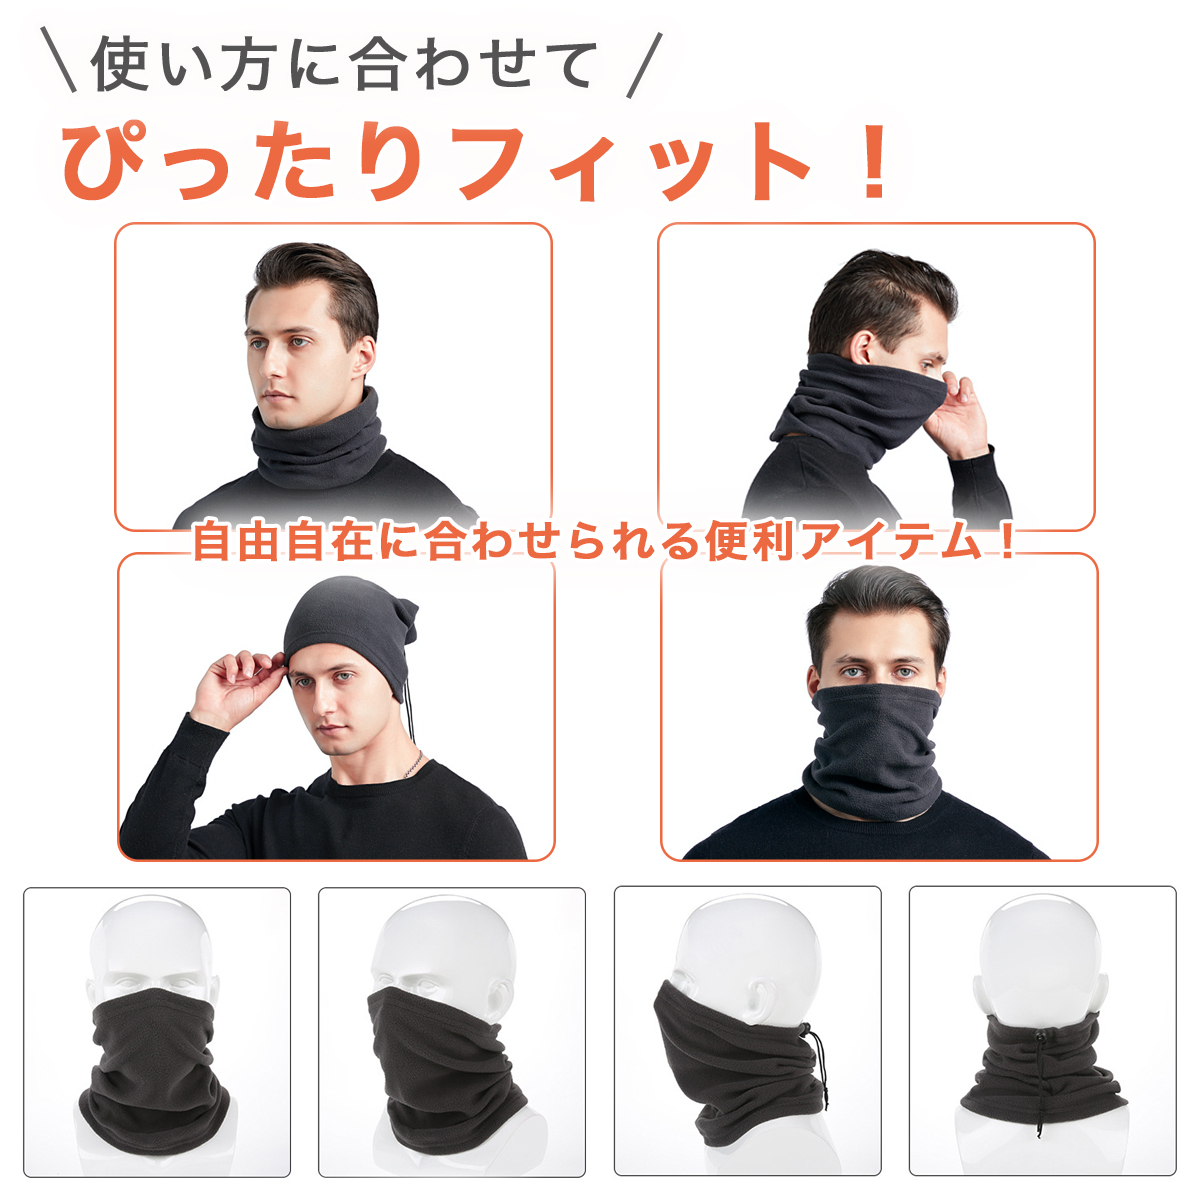  защита горла "neck warmer" мужской бейсбол Kids защищающий от холода маска для лица . способ холод . меры спорт флис шарф снуд теплый длинный 